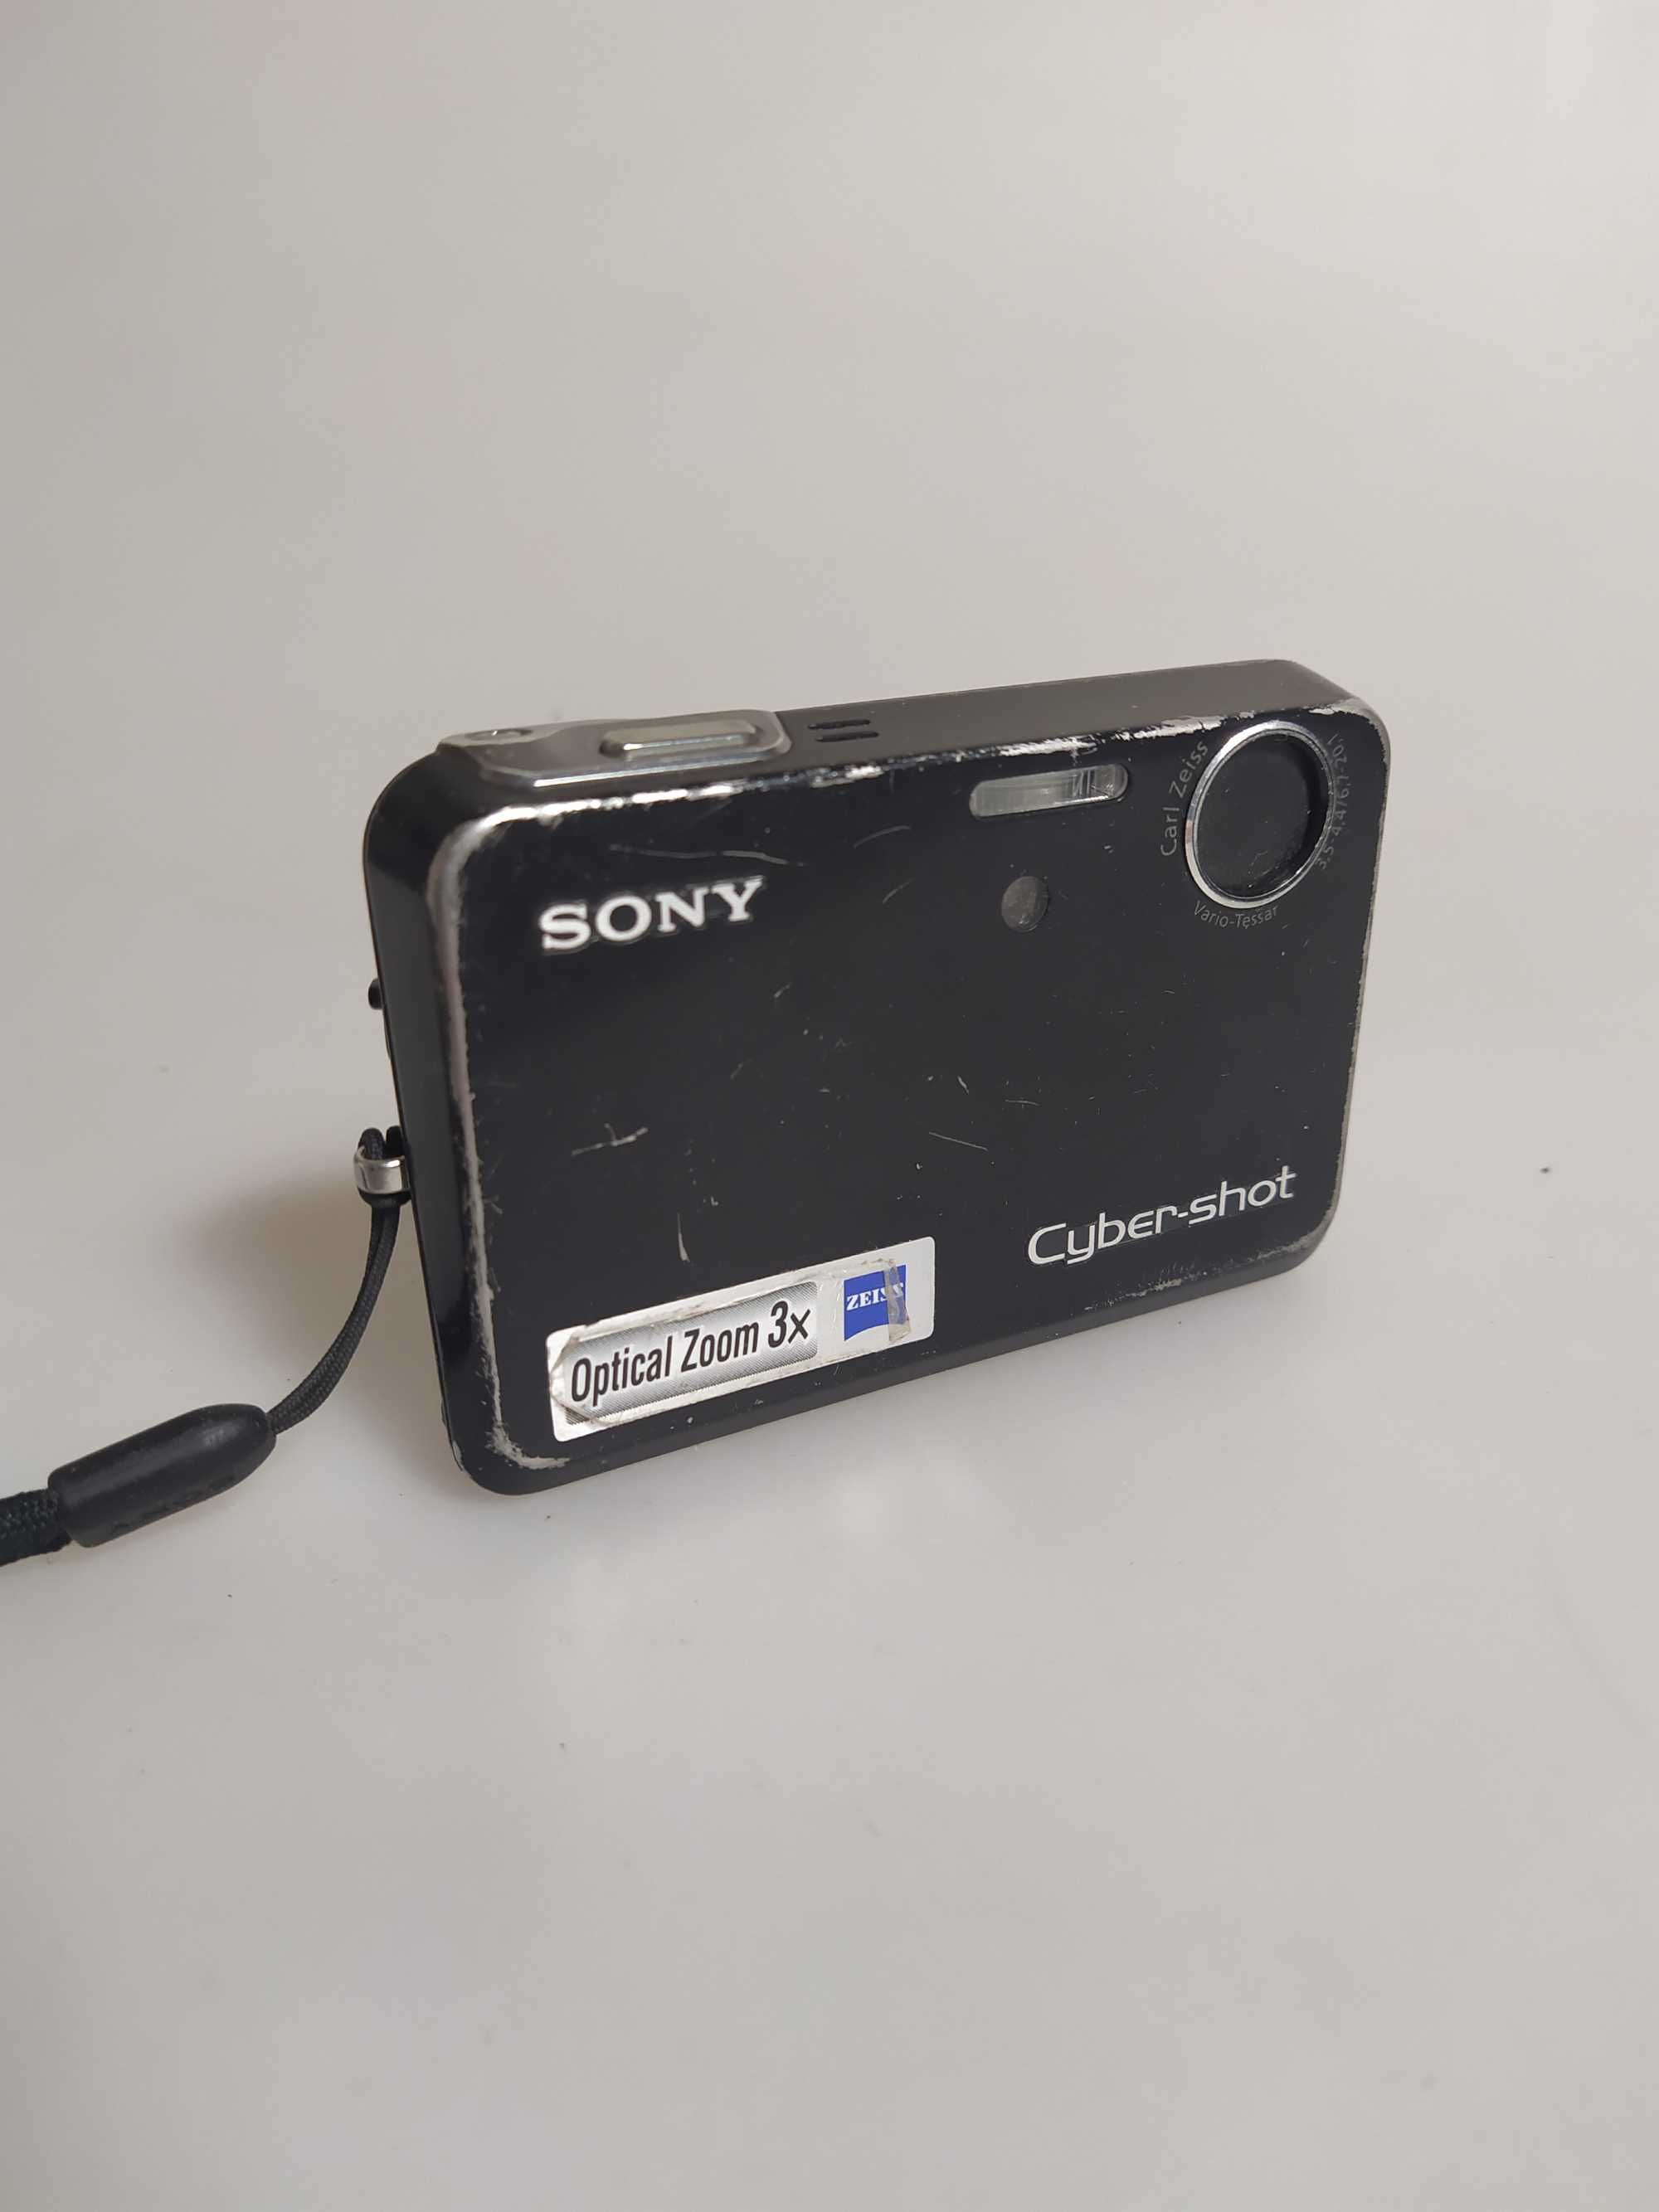 Sony Cyber-shot DSC T3 5,1 MP zoom optyczny 3x Zeiss, uszkodzony